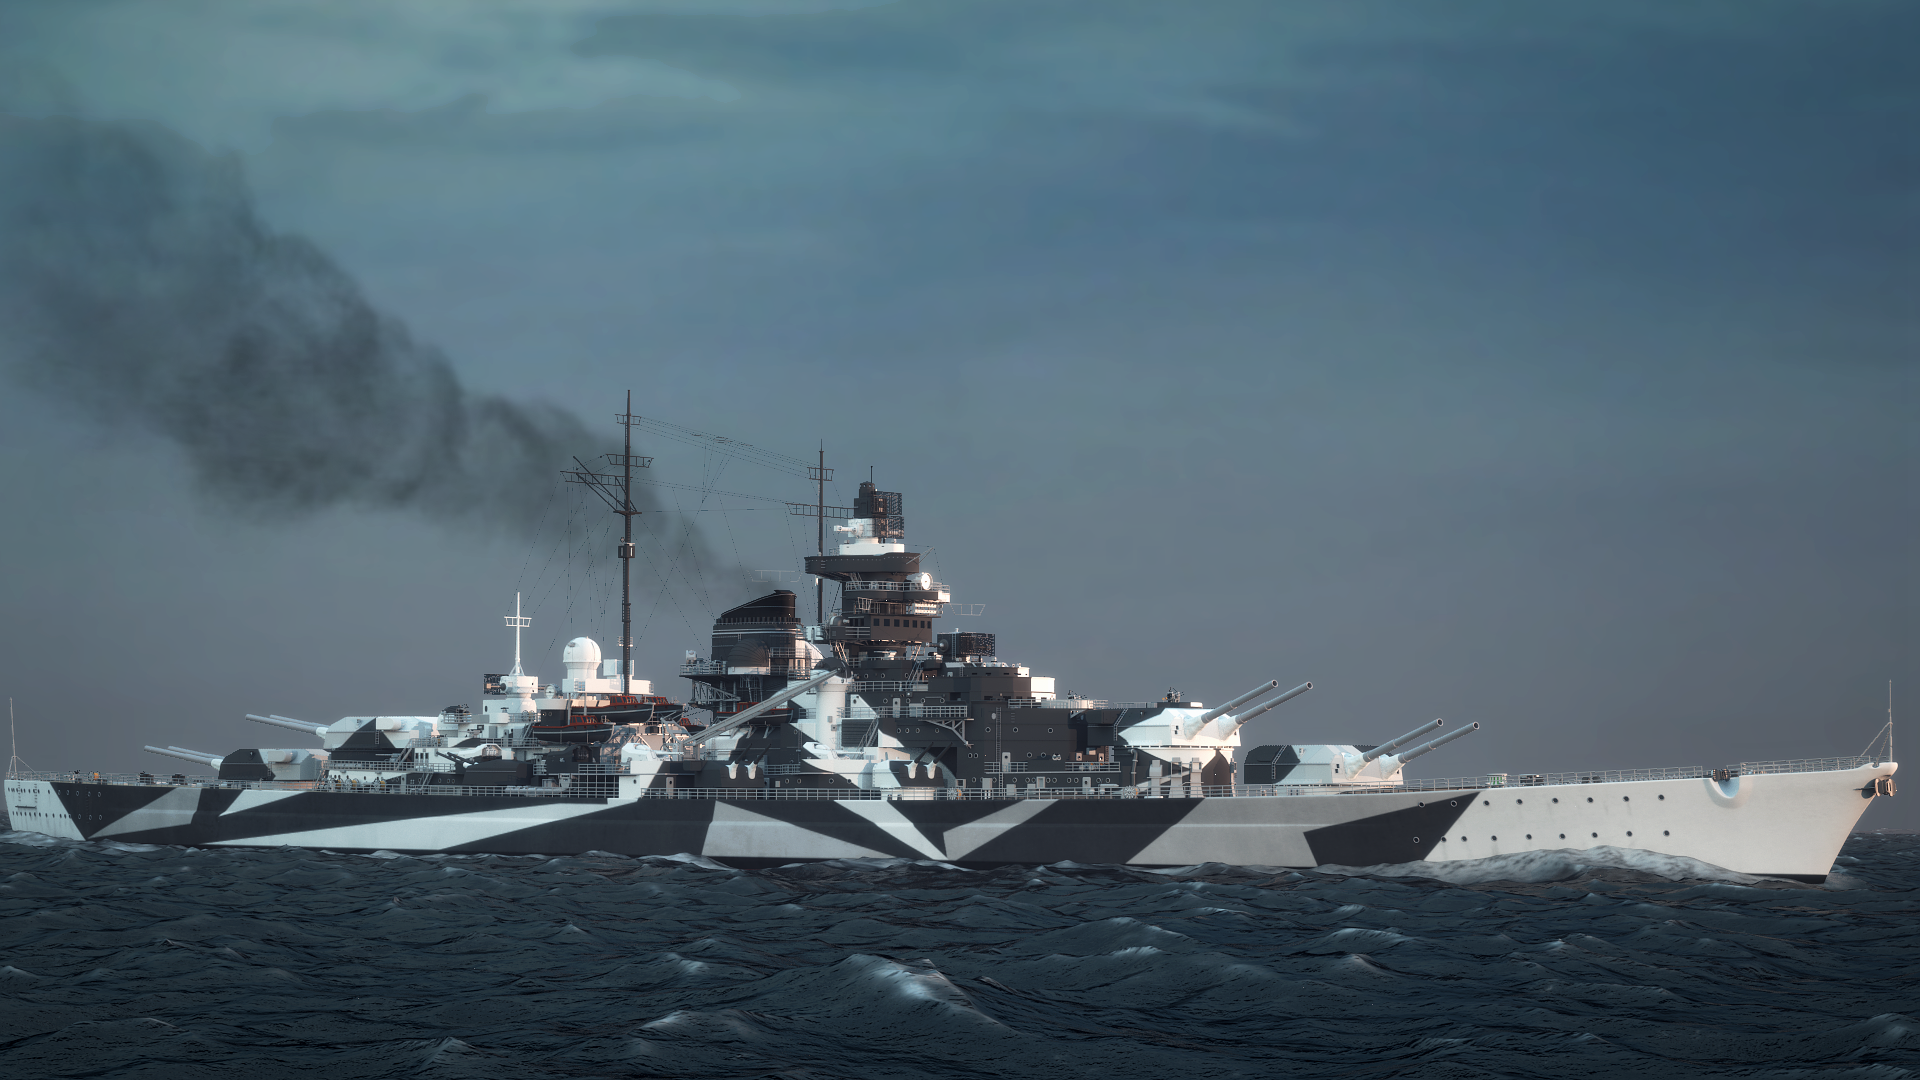 German Battleship Tirpitz #6